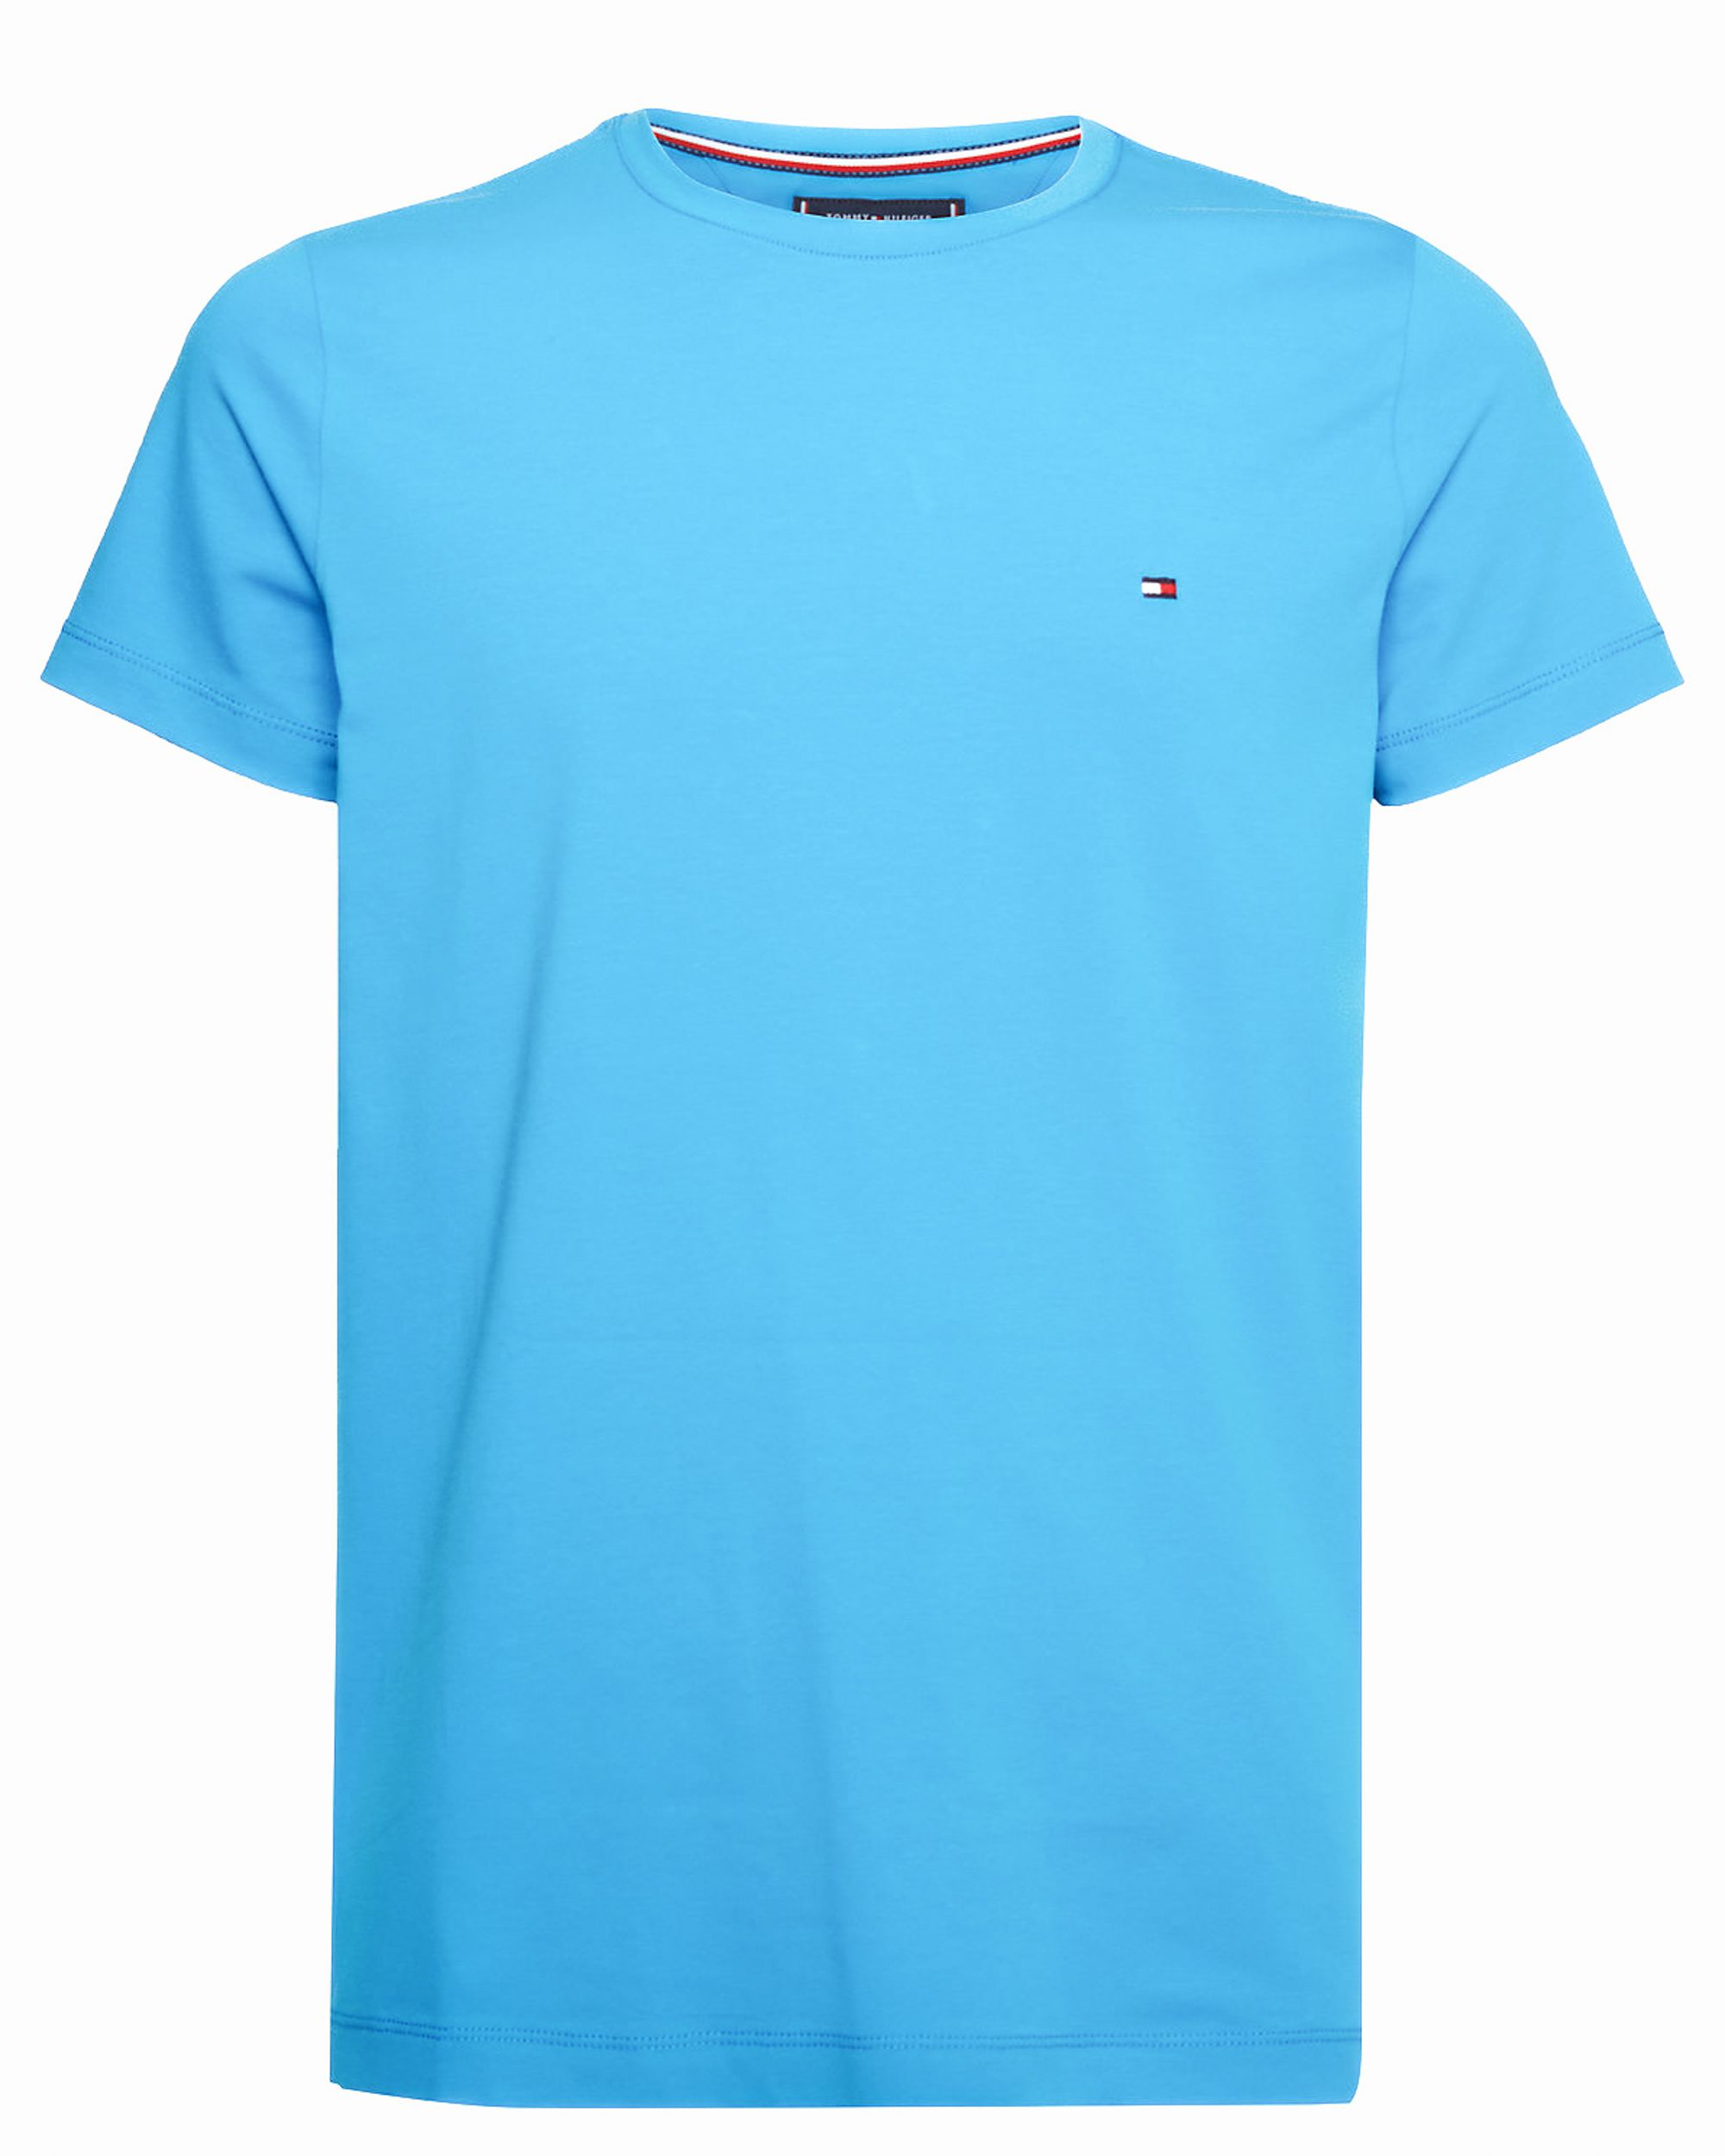 Tommy Hilfiger Menswear T-shirt KM Licht blauw 086334-002-M